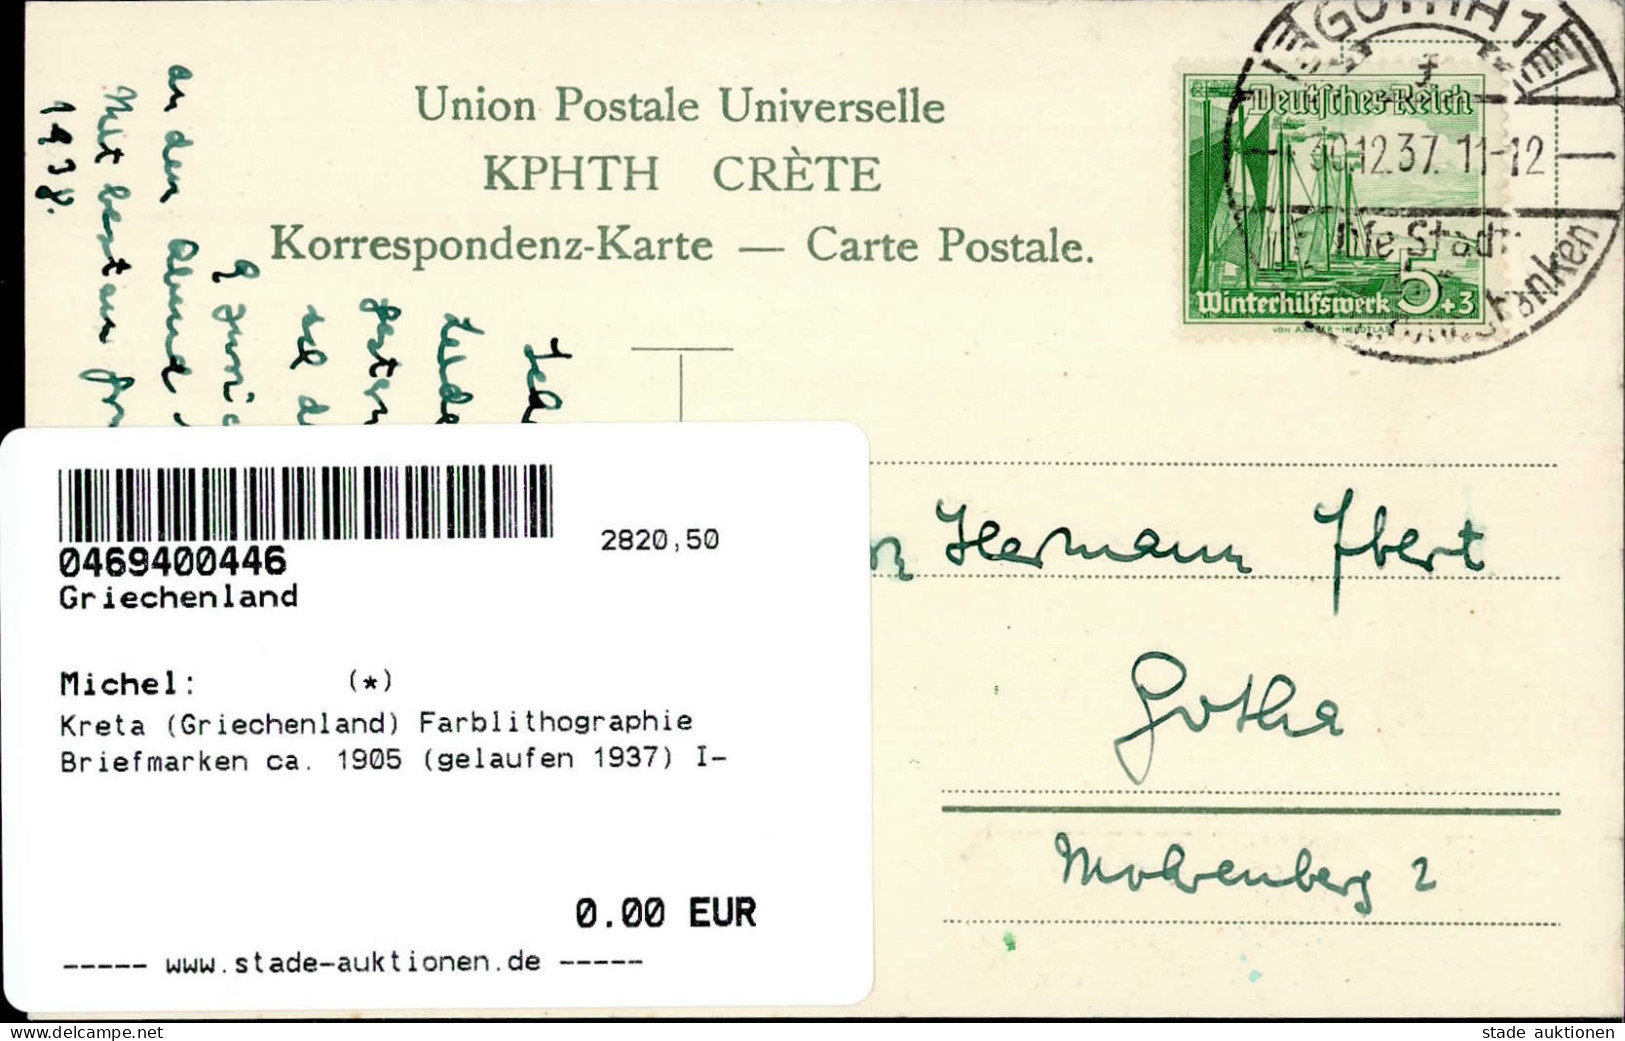 Kreta (Griechenland) Farblithographie Briefmarken Ca. 1905 (gelaufen 1937) I- - Greece